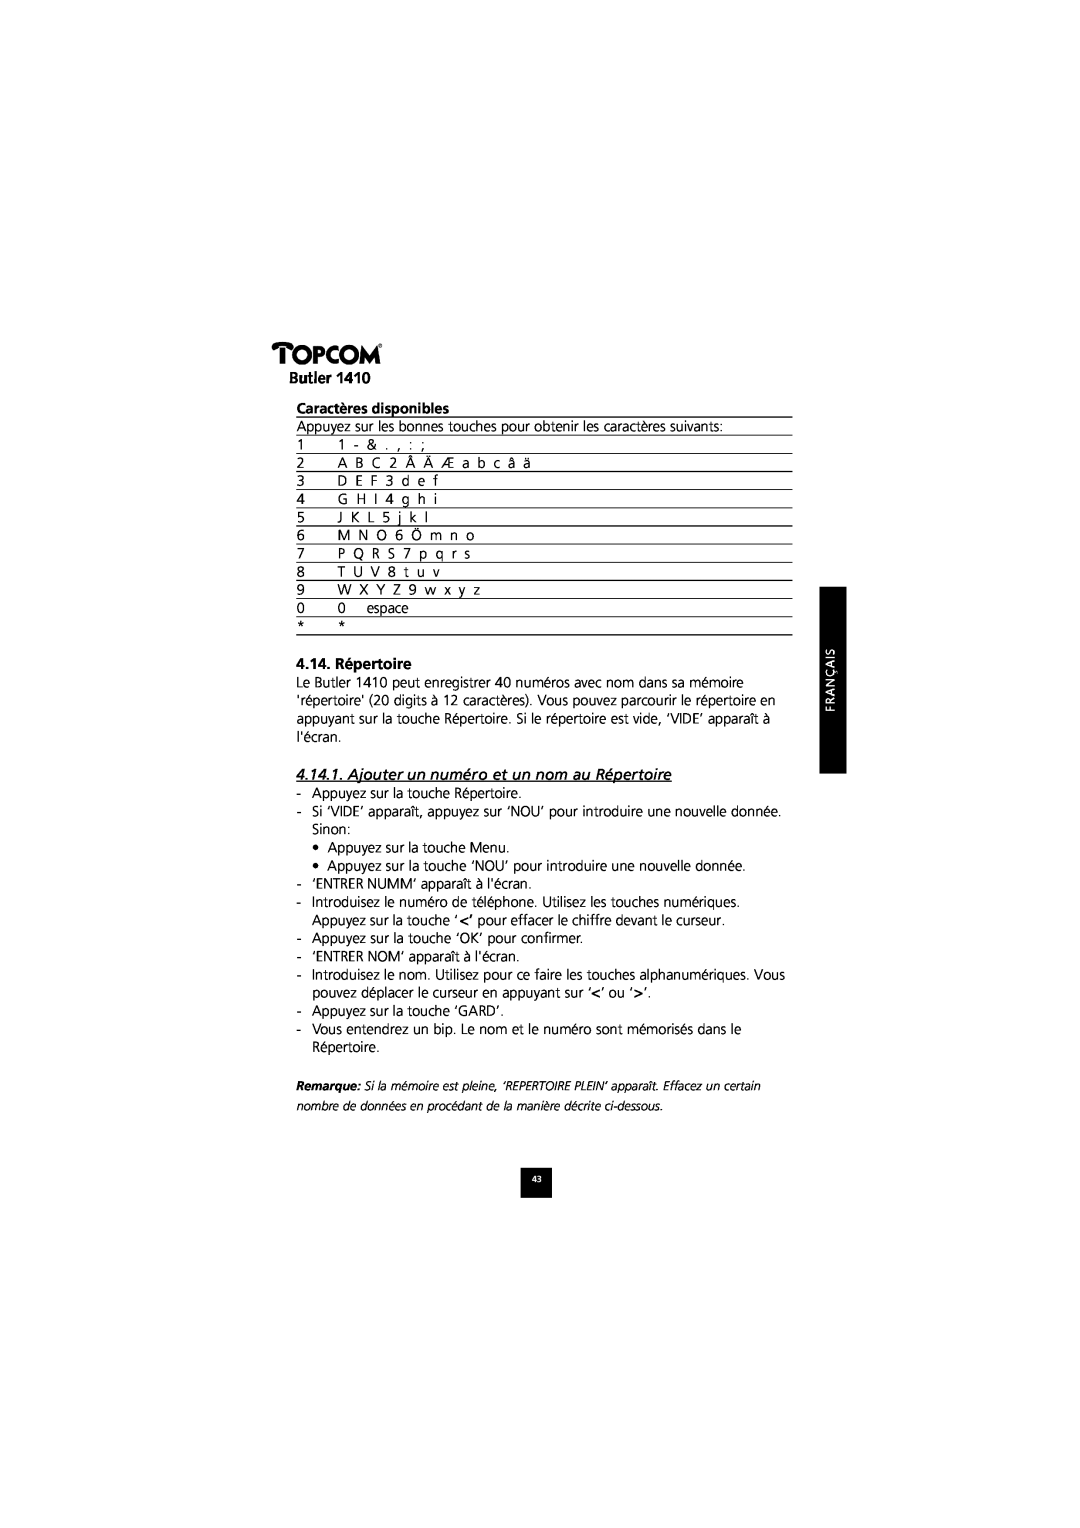 Topcom 1410 manual Caractères disponibles, 4.14. Répertoire, Ajouter un numéro et un nom au Répertoire, Butler 